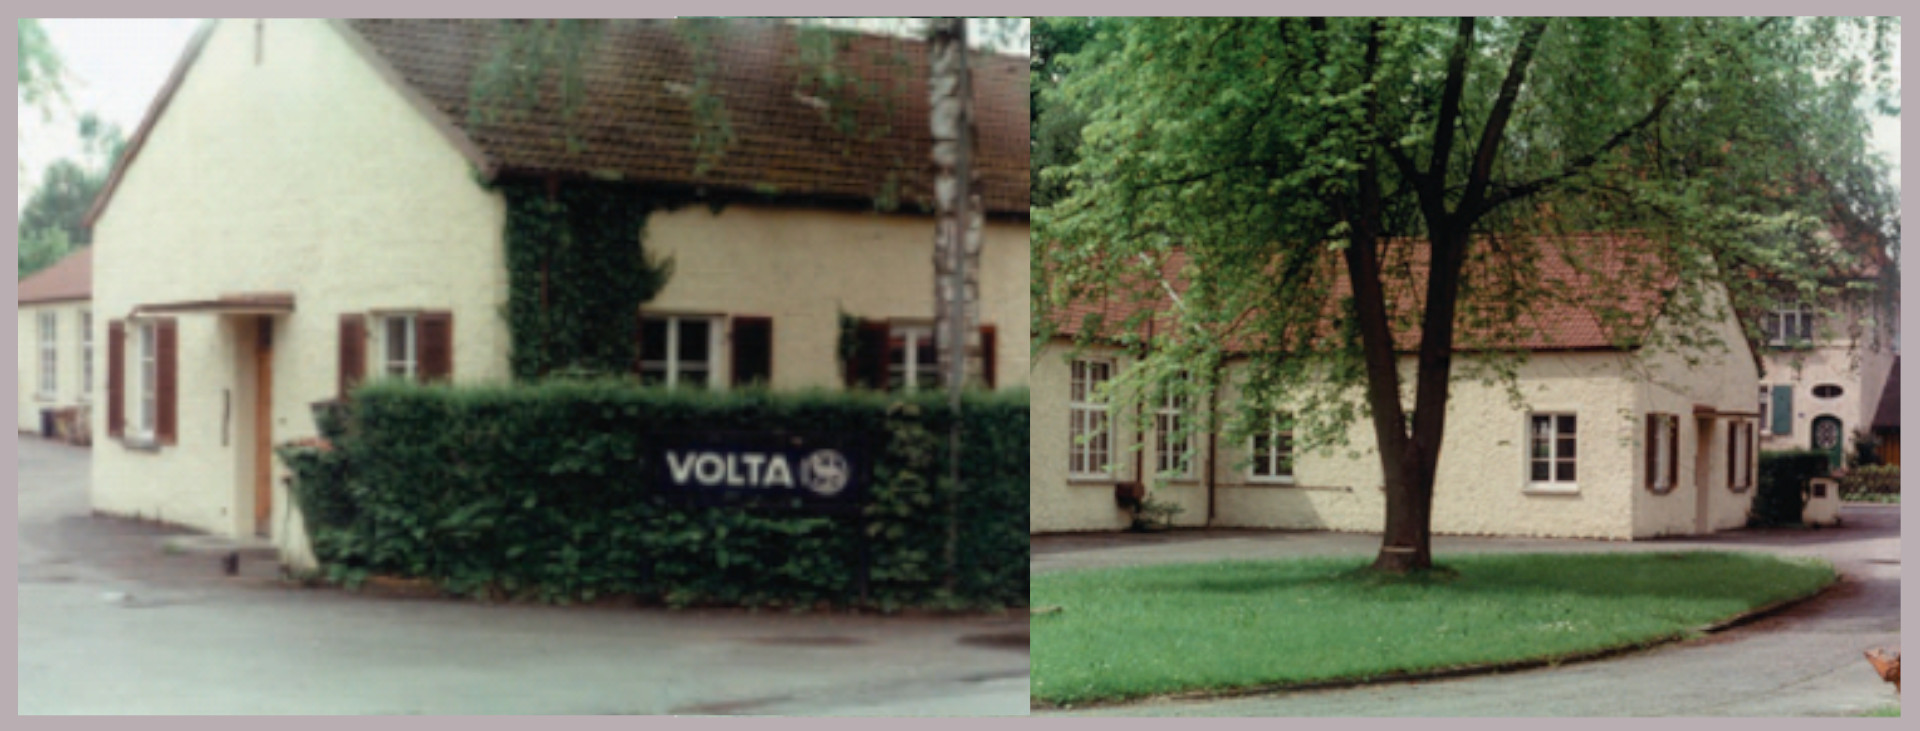 Volta-Standort-Lindau-Geschichte